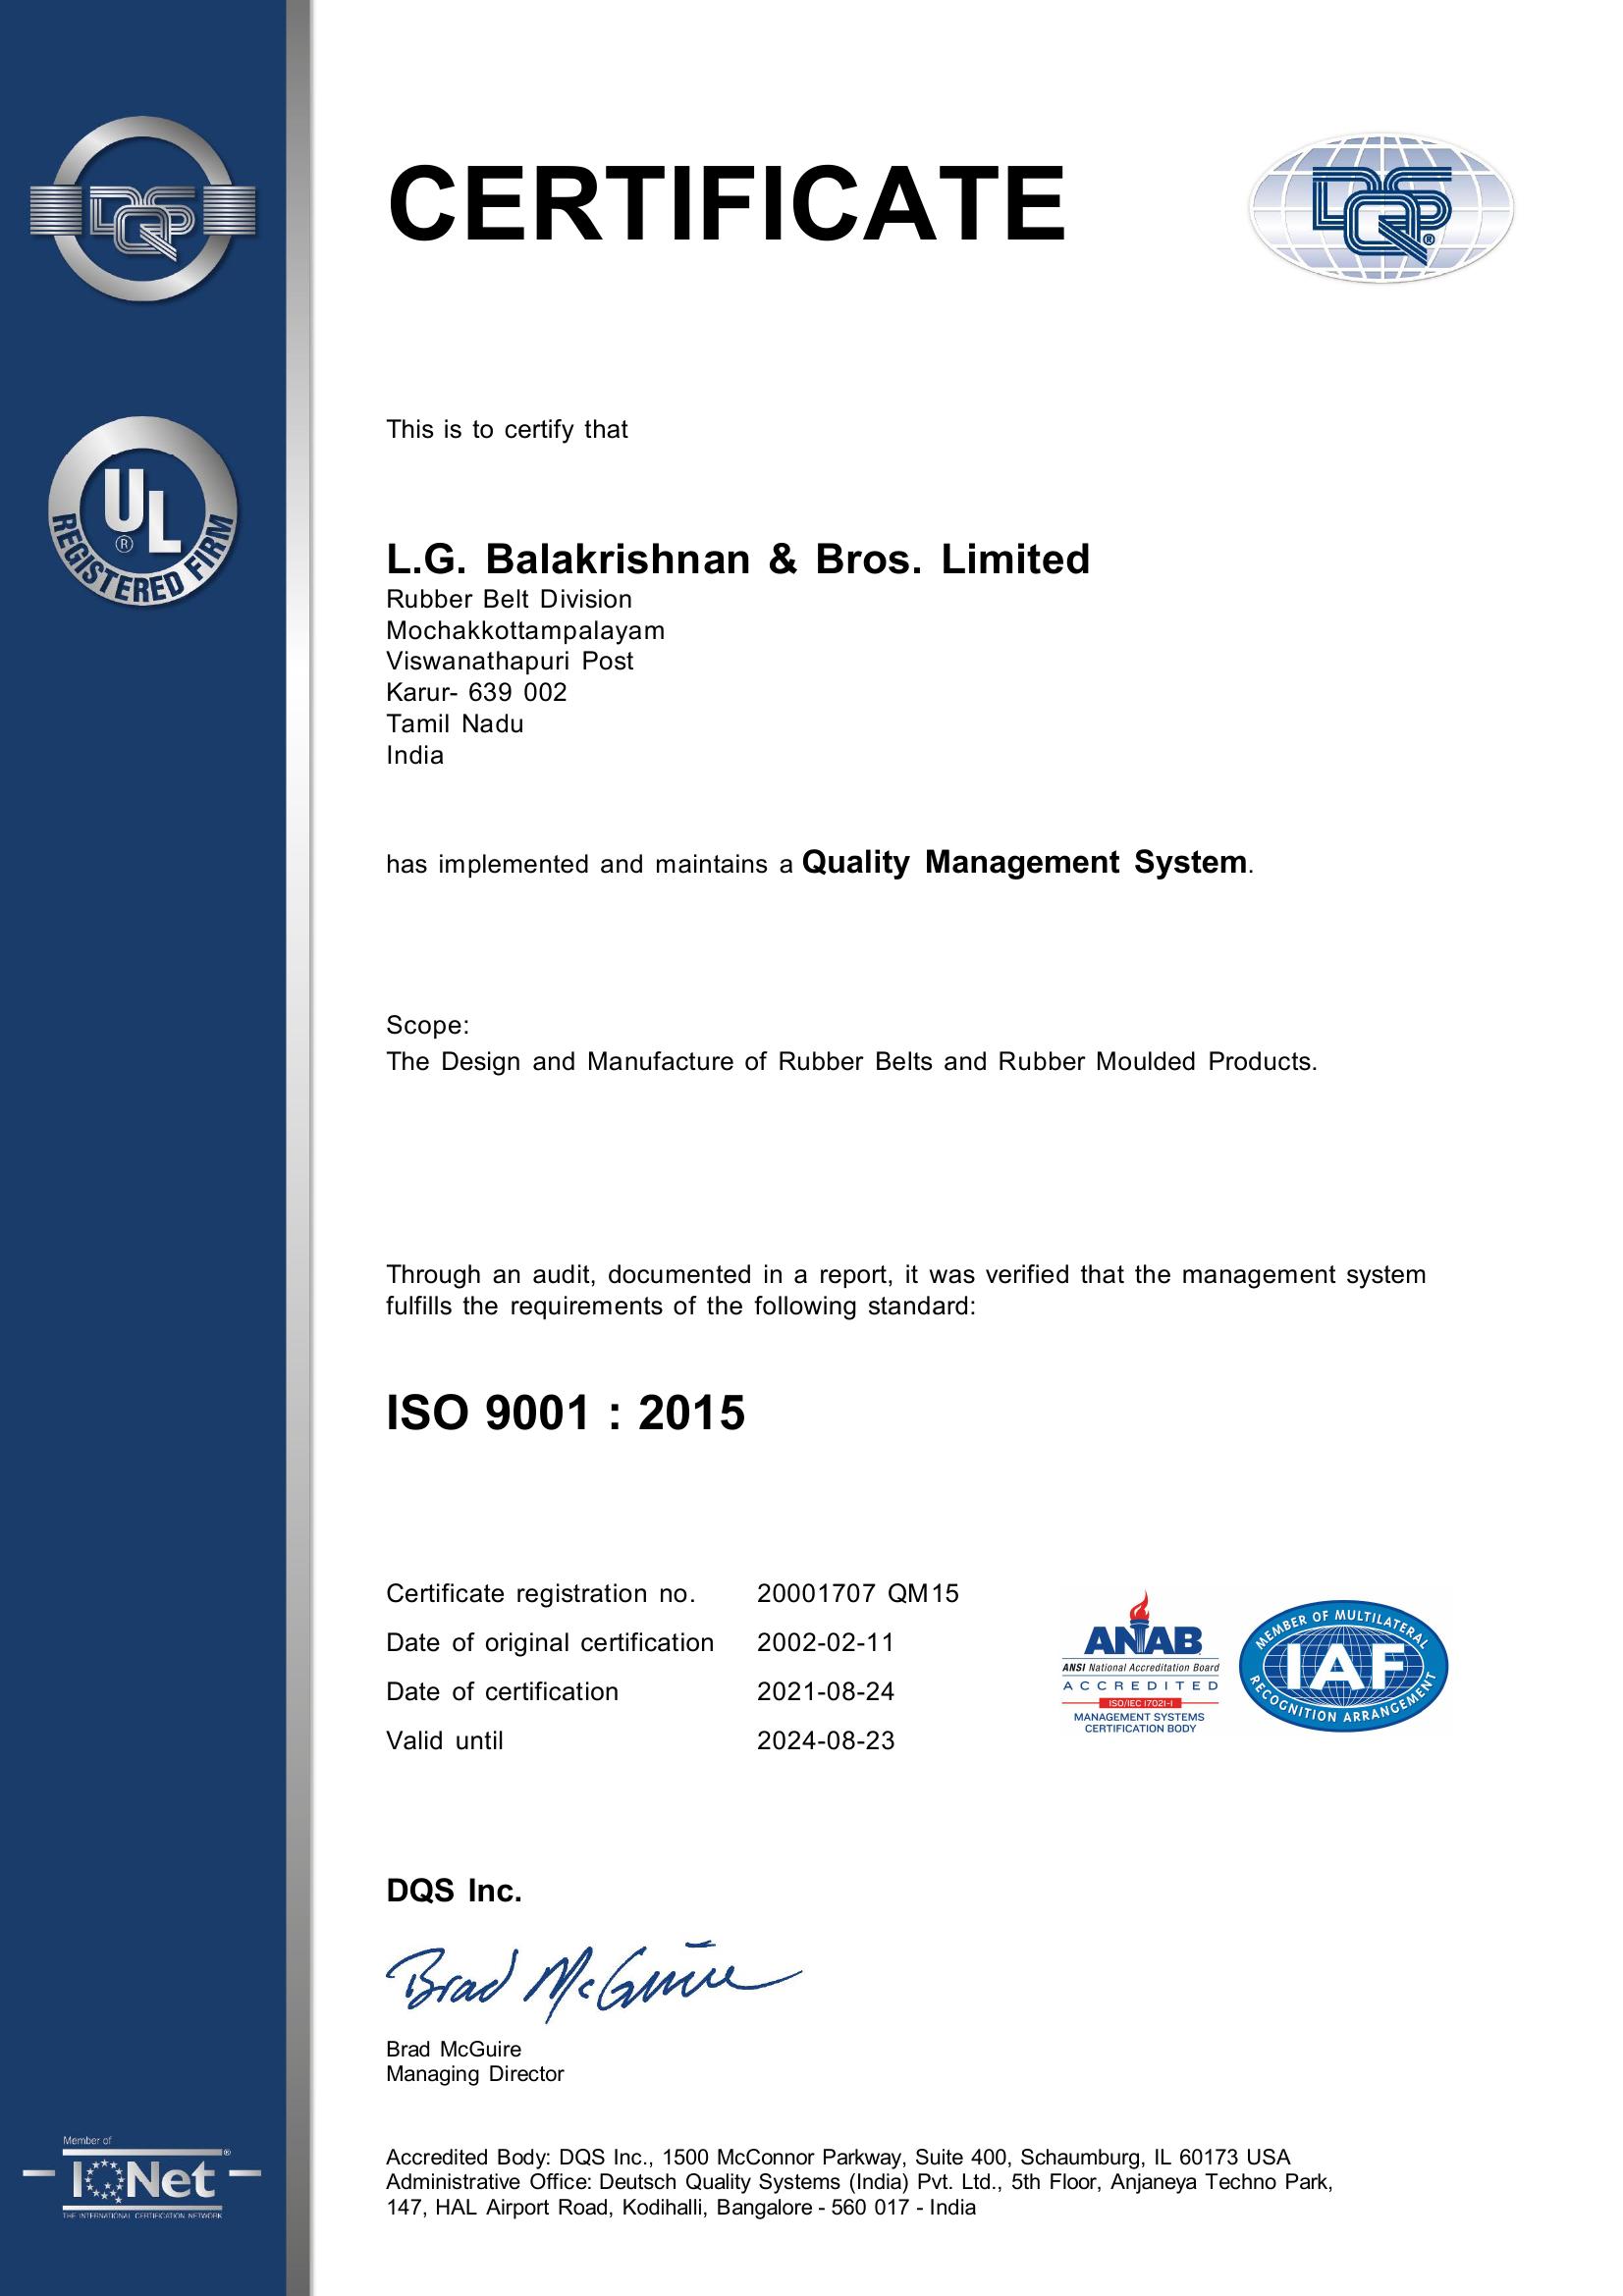 LGB RBD KARUR - ISO 9001 2015